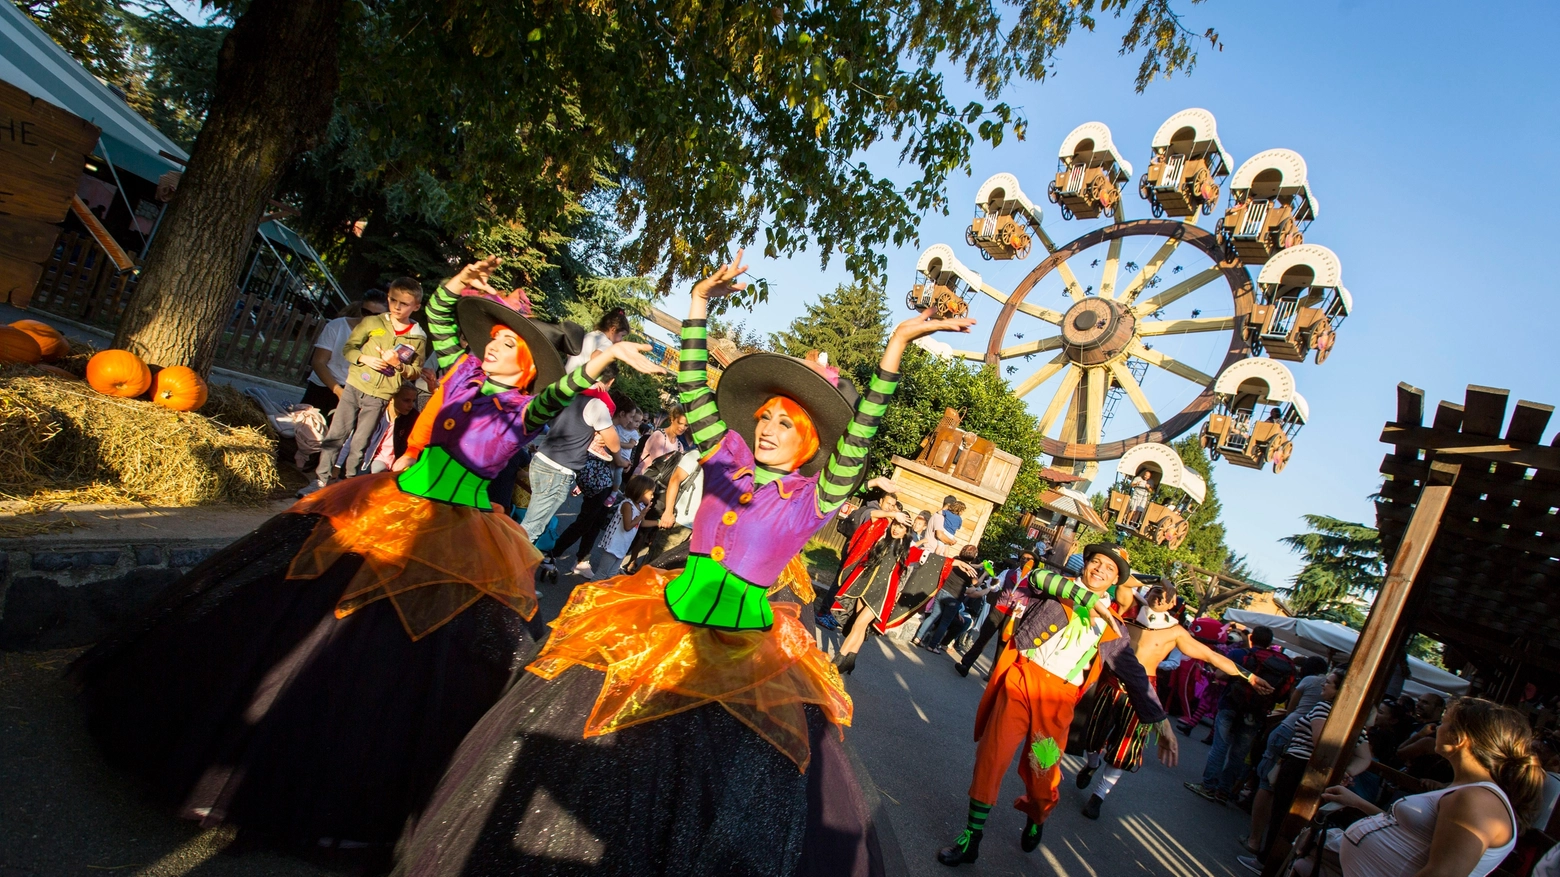 Dal 28 settembre al 10 novembre, il parco divertimenti accoglierà i suoi ospiti in una veste da brivido